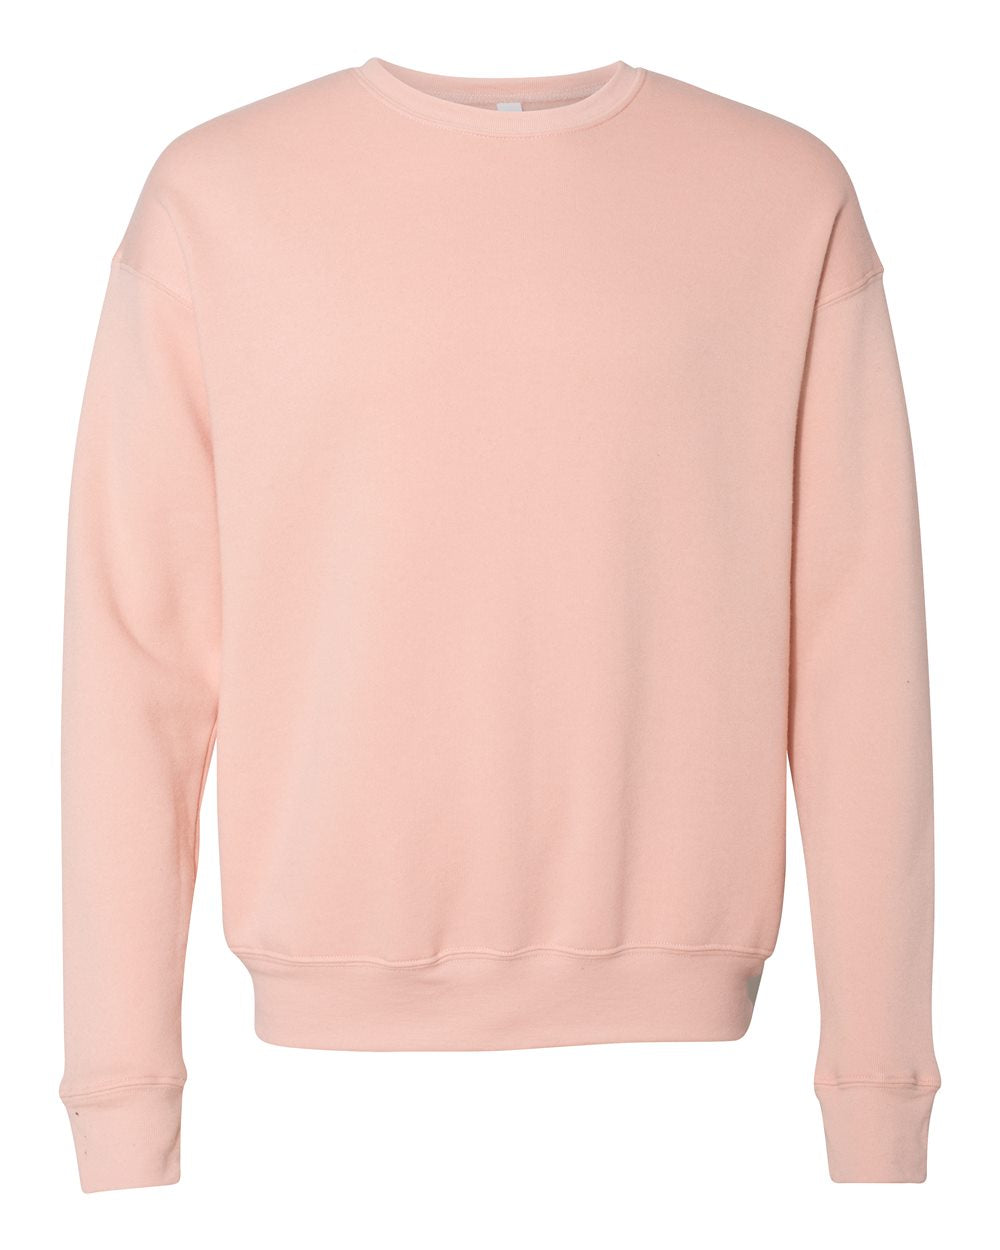 bella+canvas fleece crewneck sweatshirt peach